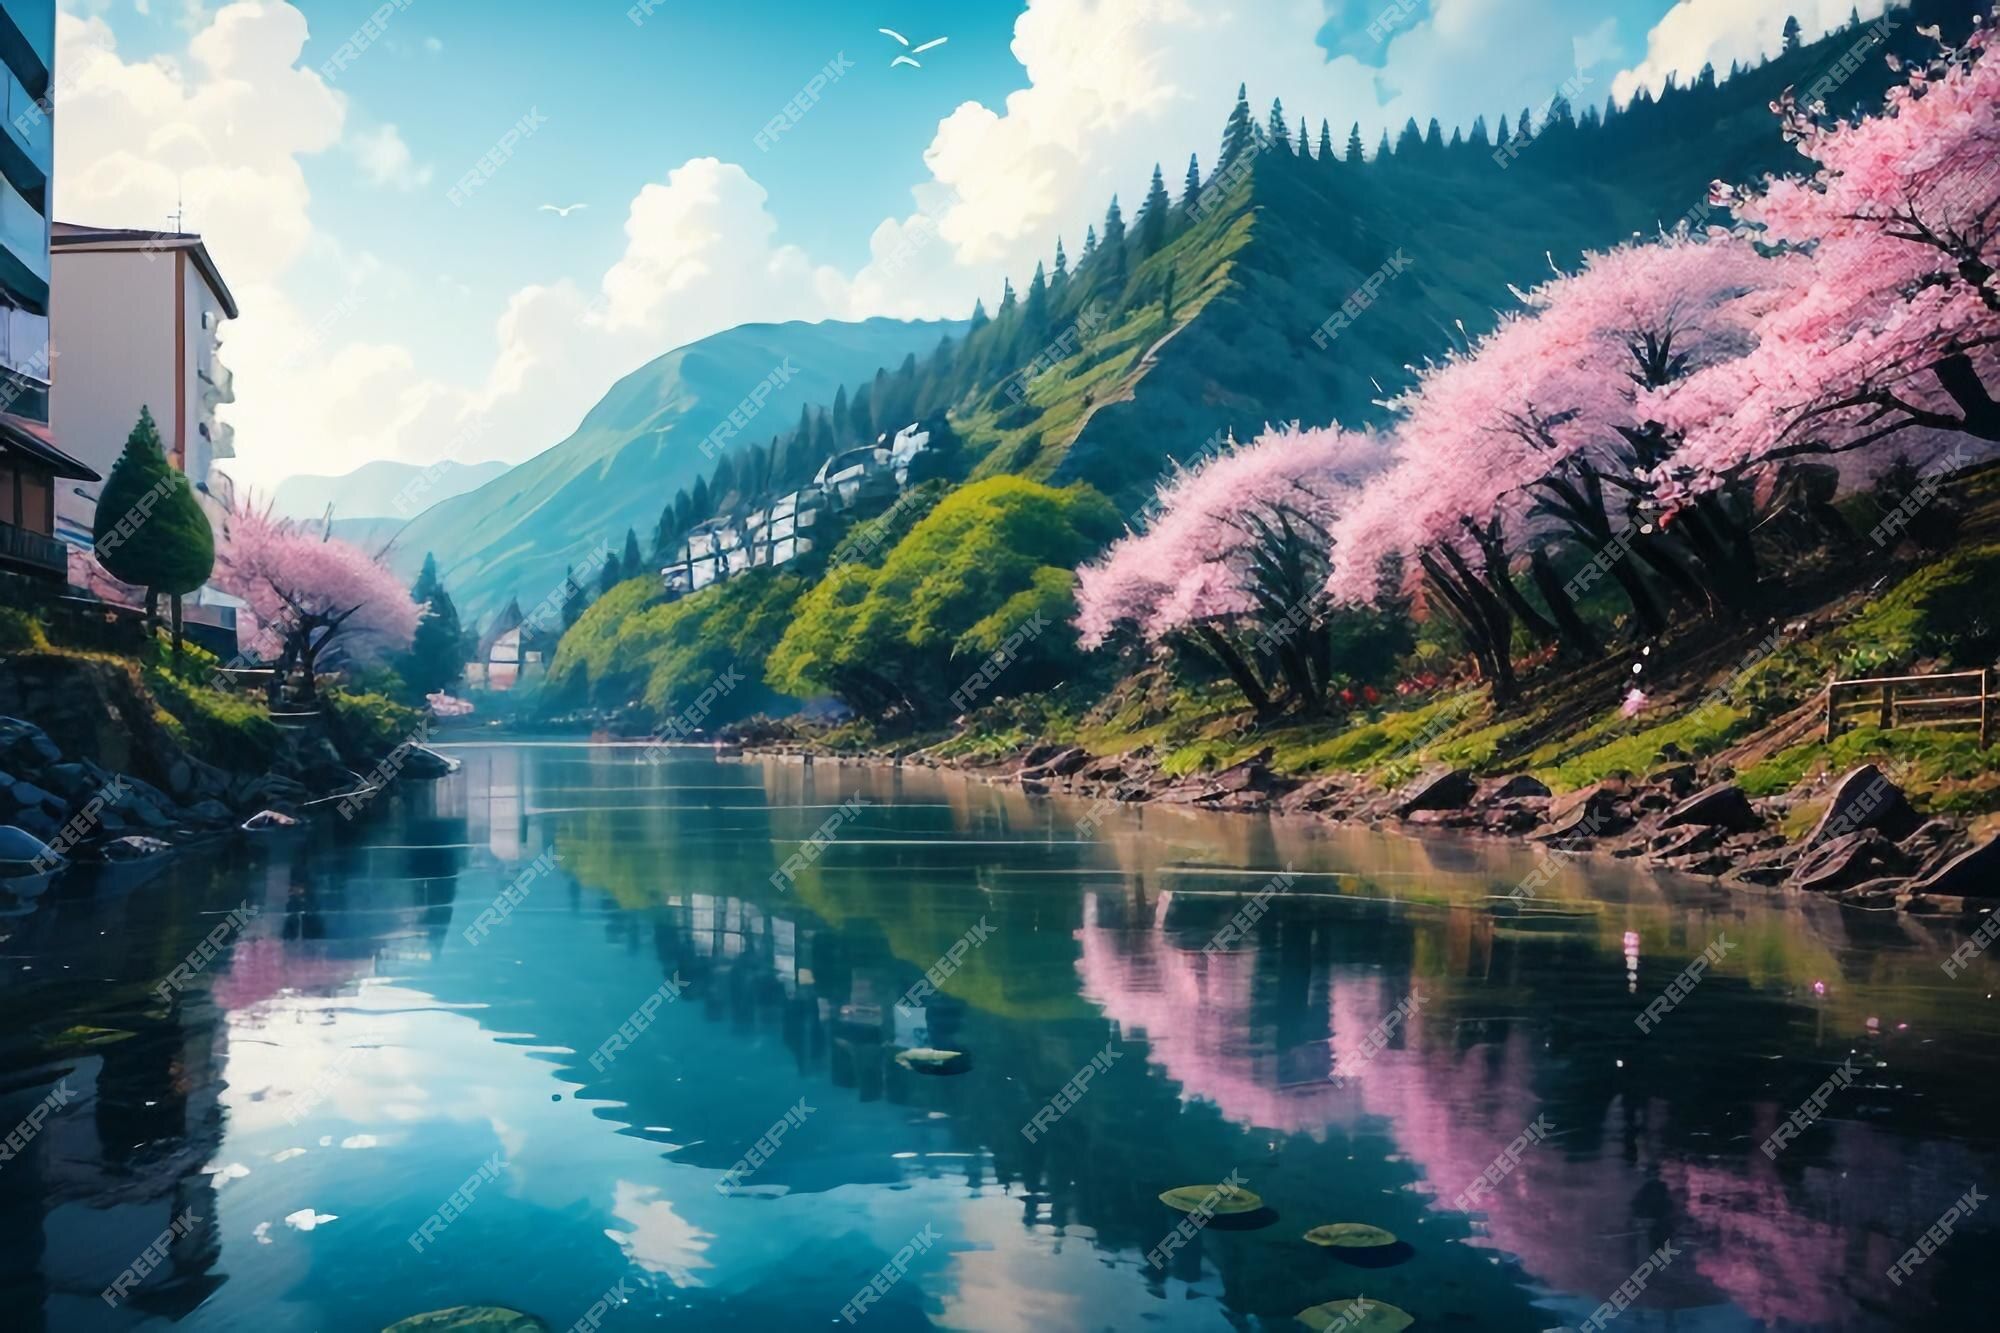  Landschaften Hintergrundbild 2000x1333. Cartoon Anime Stil Dorf Fluss Berg Baum Natur Landschaft Tapete Illustration Hintergrund